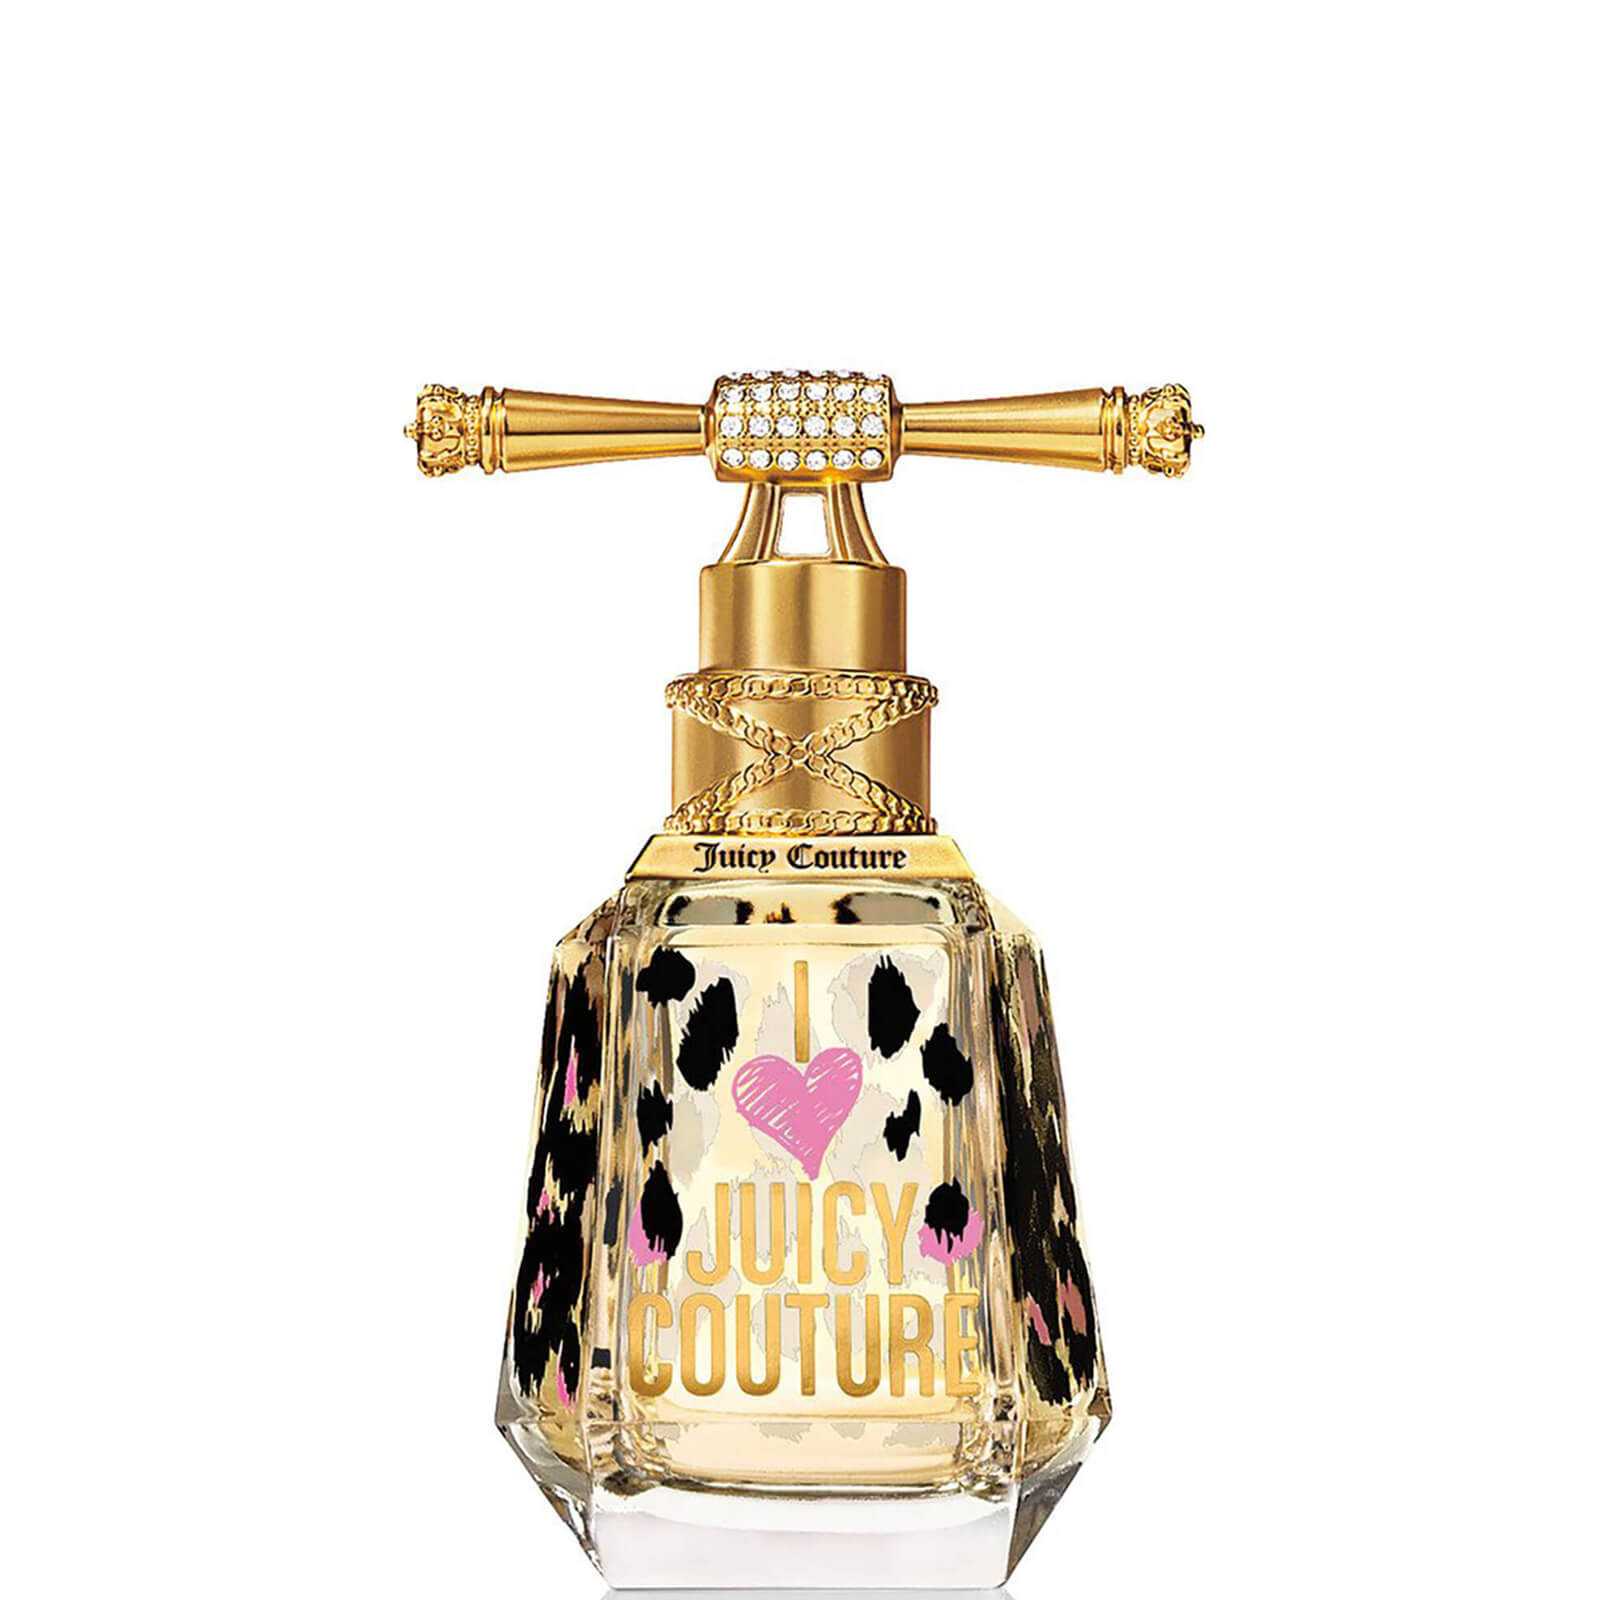 Photos - Women's Fragrance Juicy Couture I Love  Eau de Parfum - 50ml A0103624 